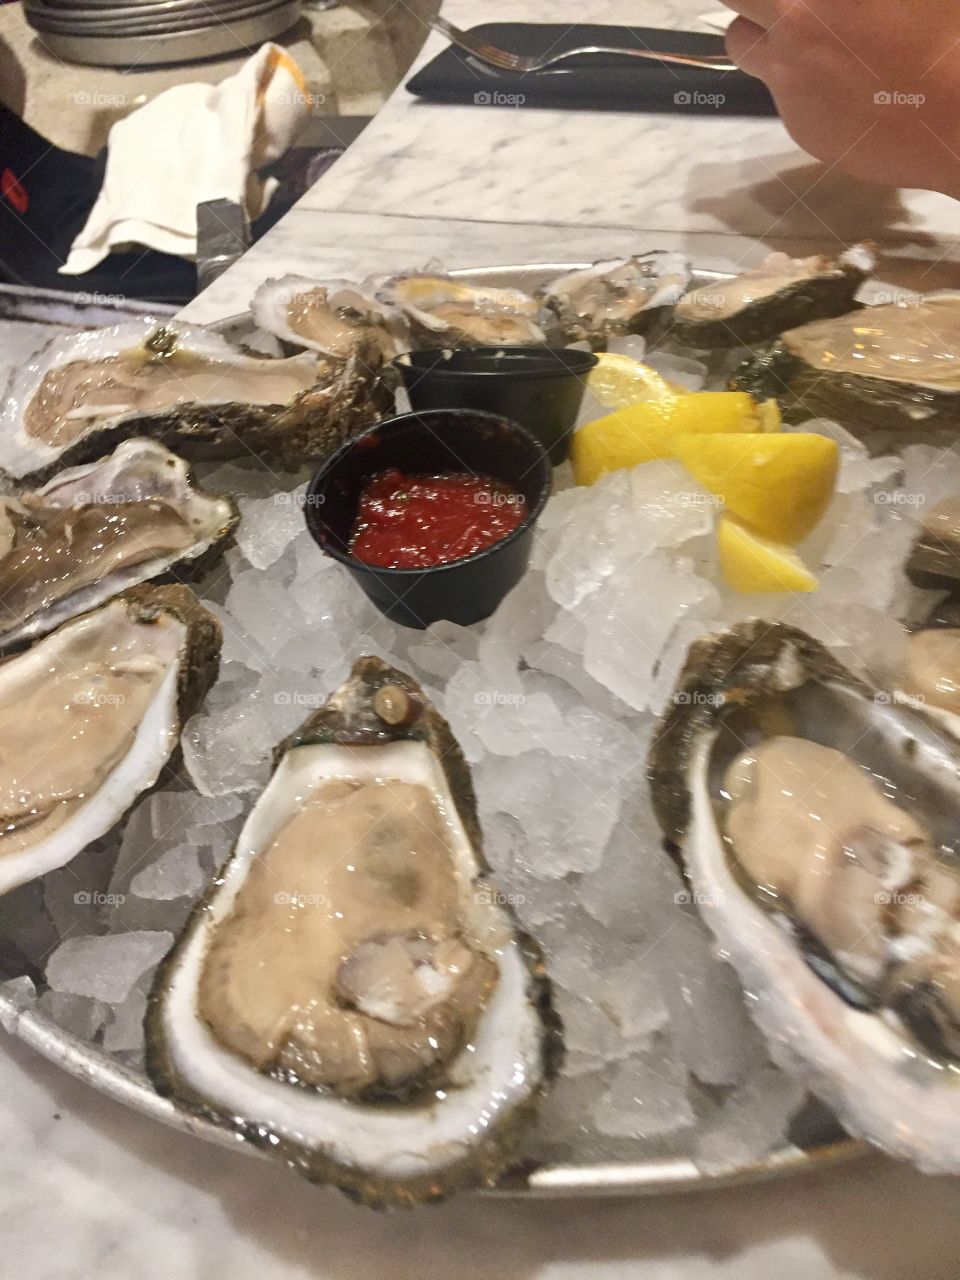 Gulf coast oysters